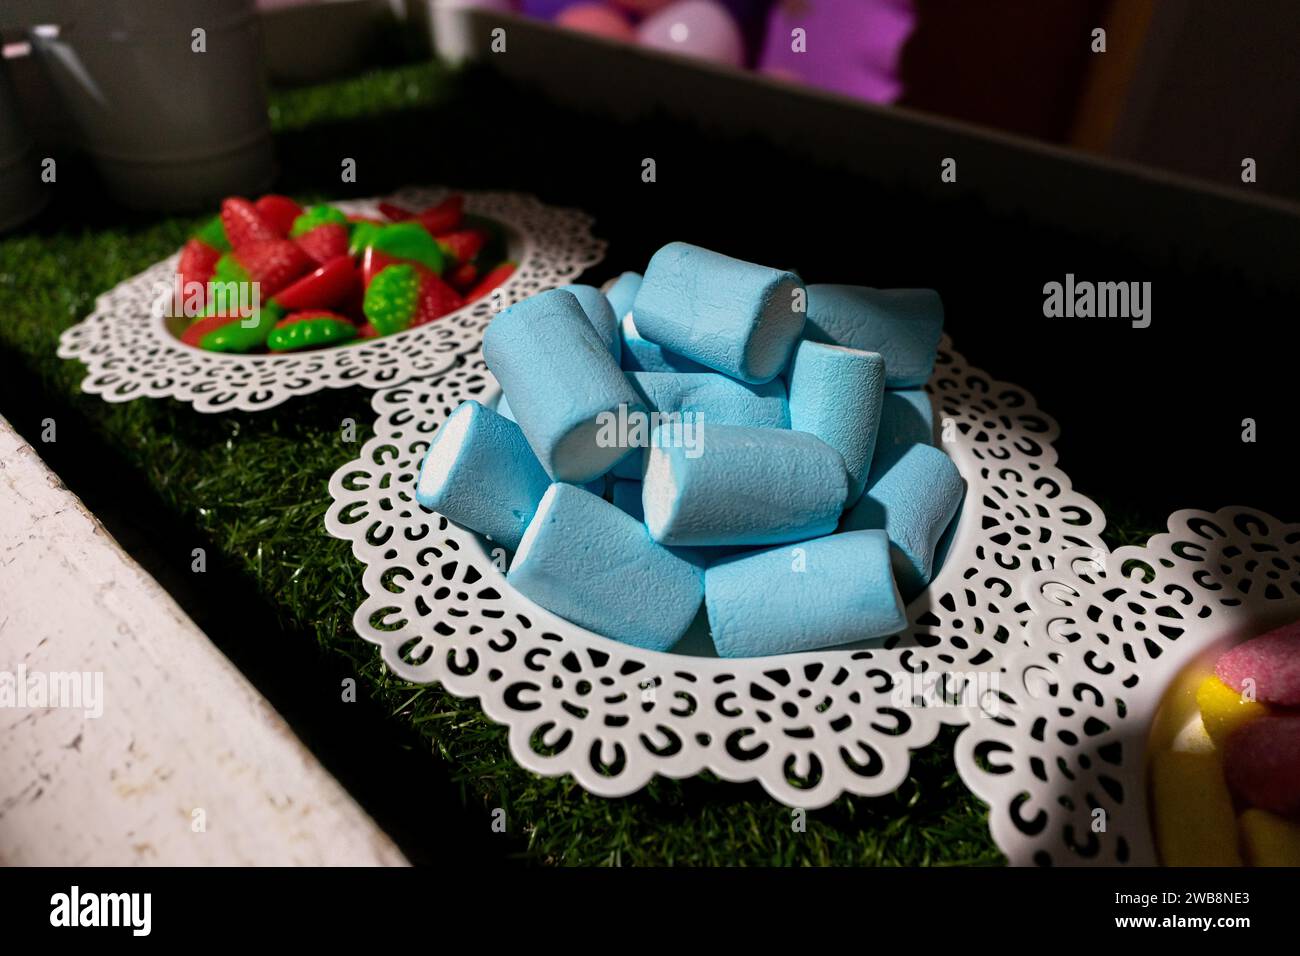 Farbenfrohe blaue Marshmallow-Süßigkeiten auf einem Teller, die eine süße Note für eine Geburtstagsfeier verleihen. Stockfoto